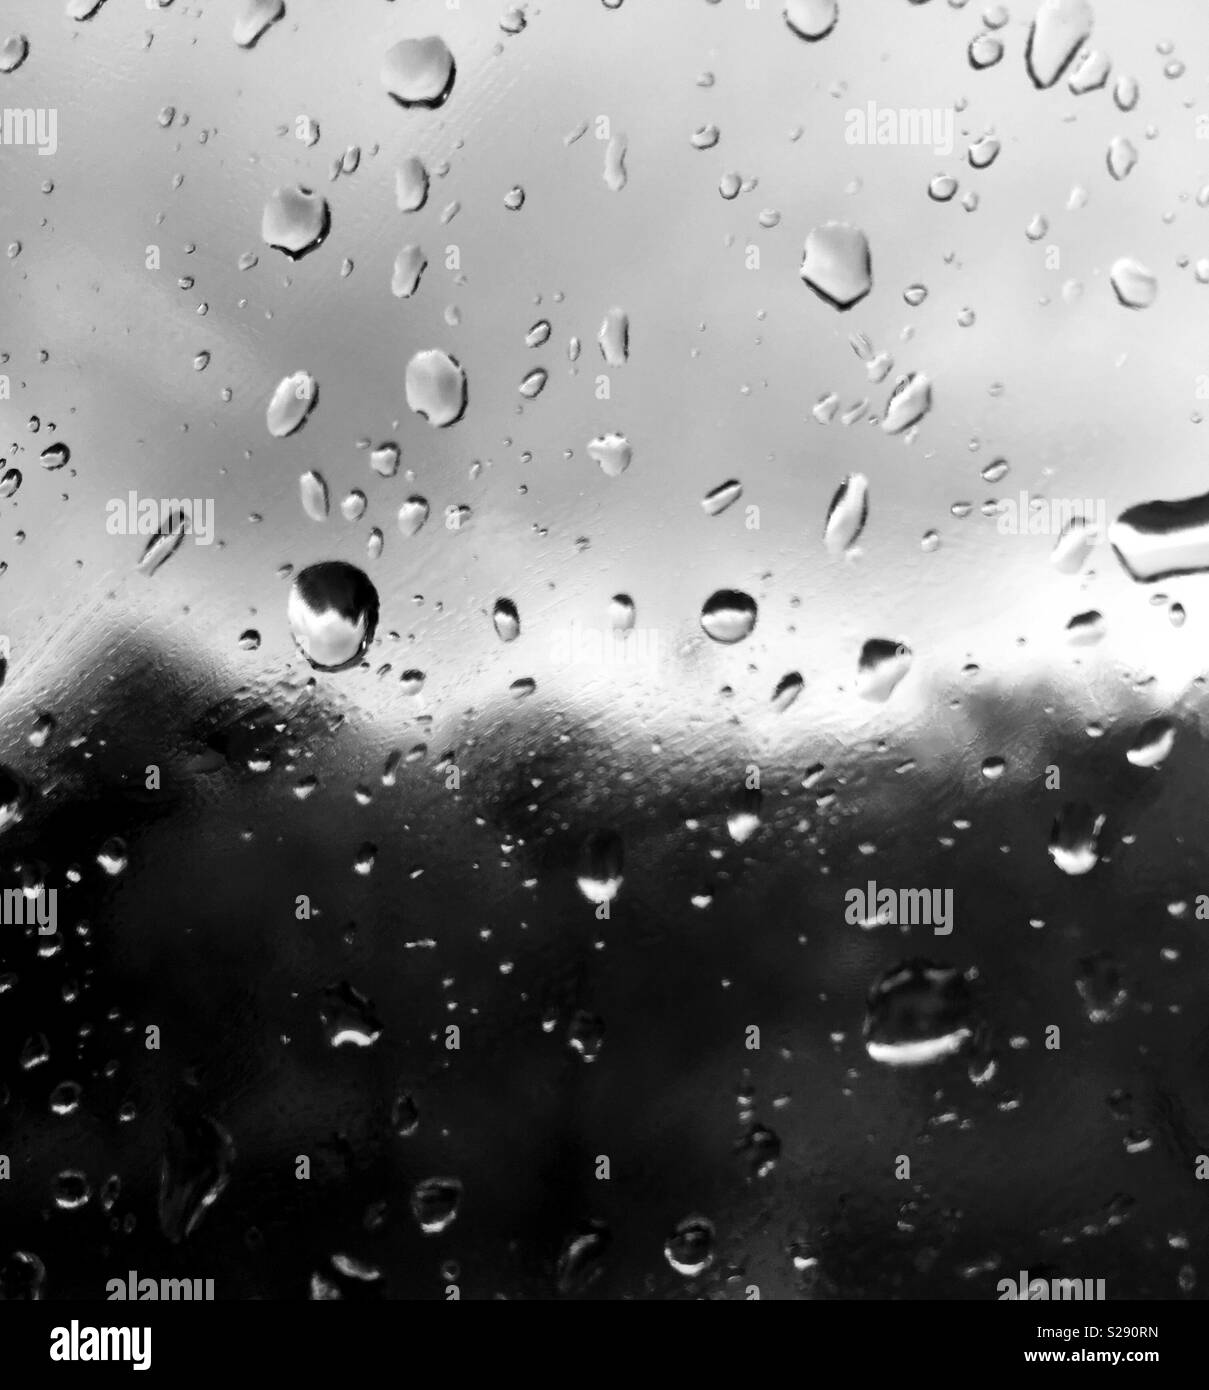 Regen am Fenster. Sehr traurig suchen Stockfotografie - Alamy